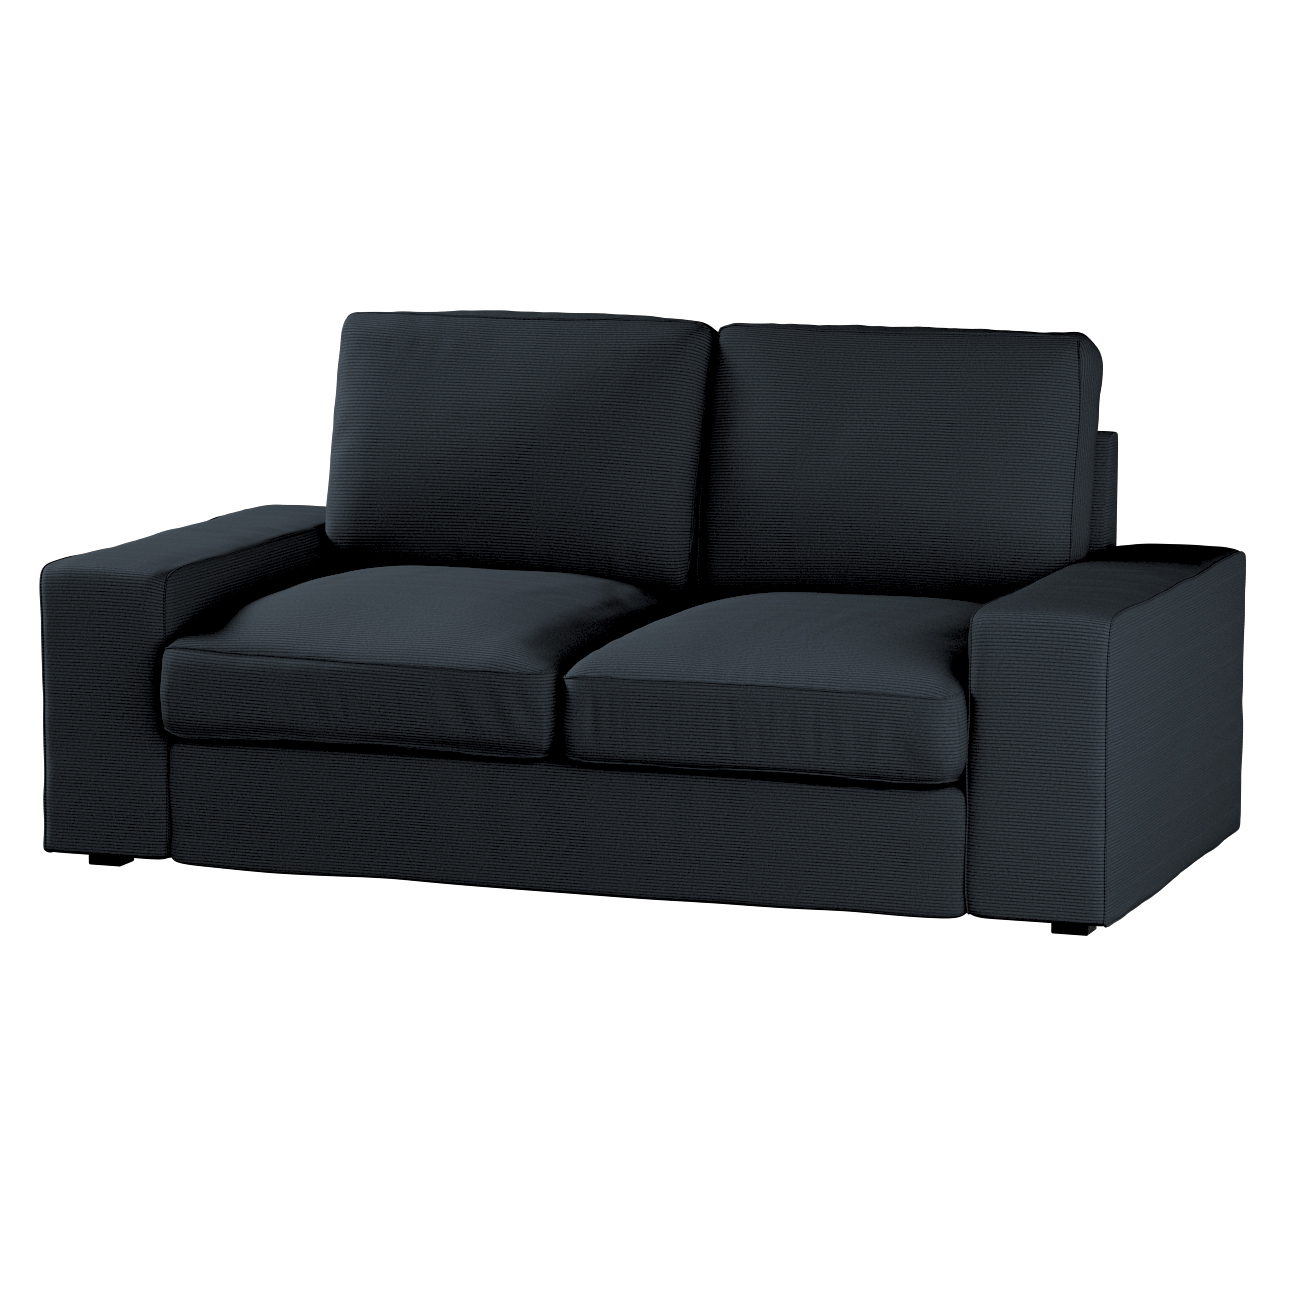 Bezug für Kivik 2-Sitzer Sofa, anthrazit, Bezug für Sofa Kivik 2-Sitzer, Ma günstig online kaufen